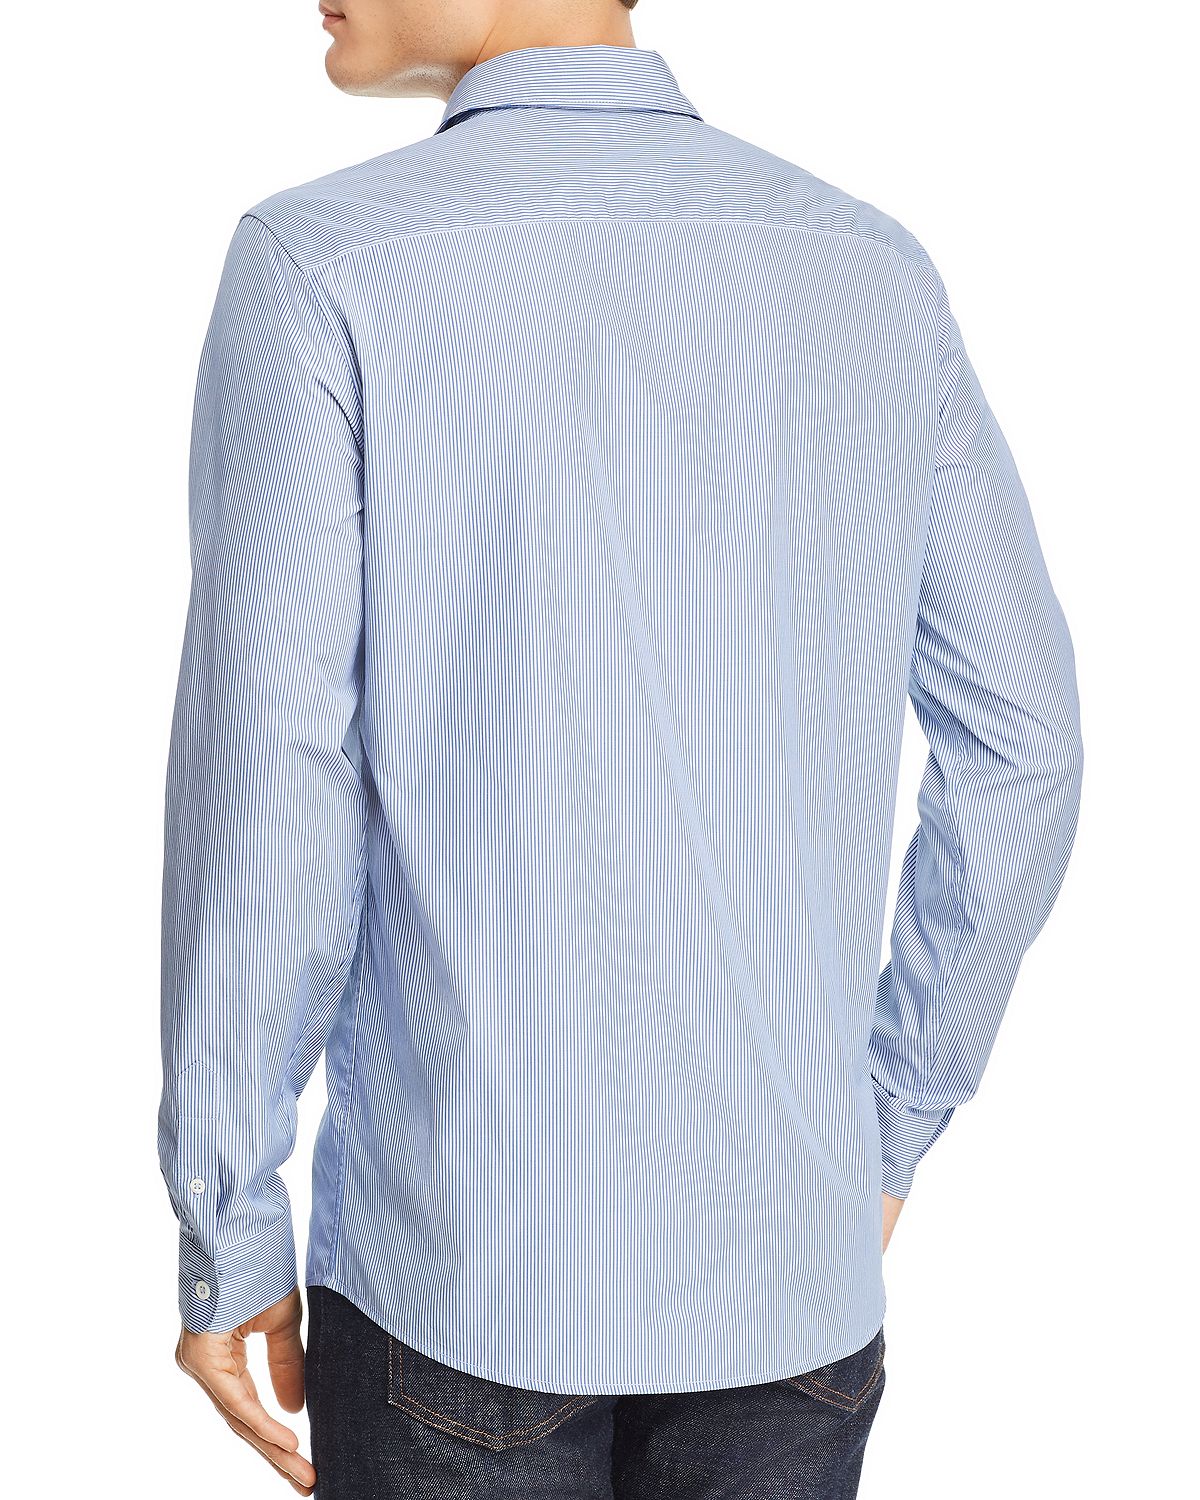 A.p.c. Hector Pinstripe Regular Fit Shirt Blue